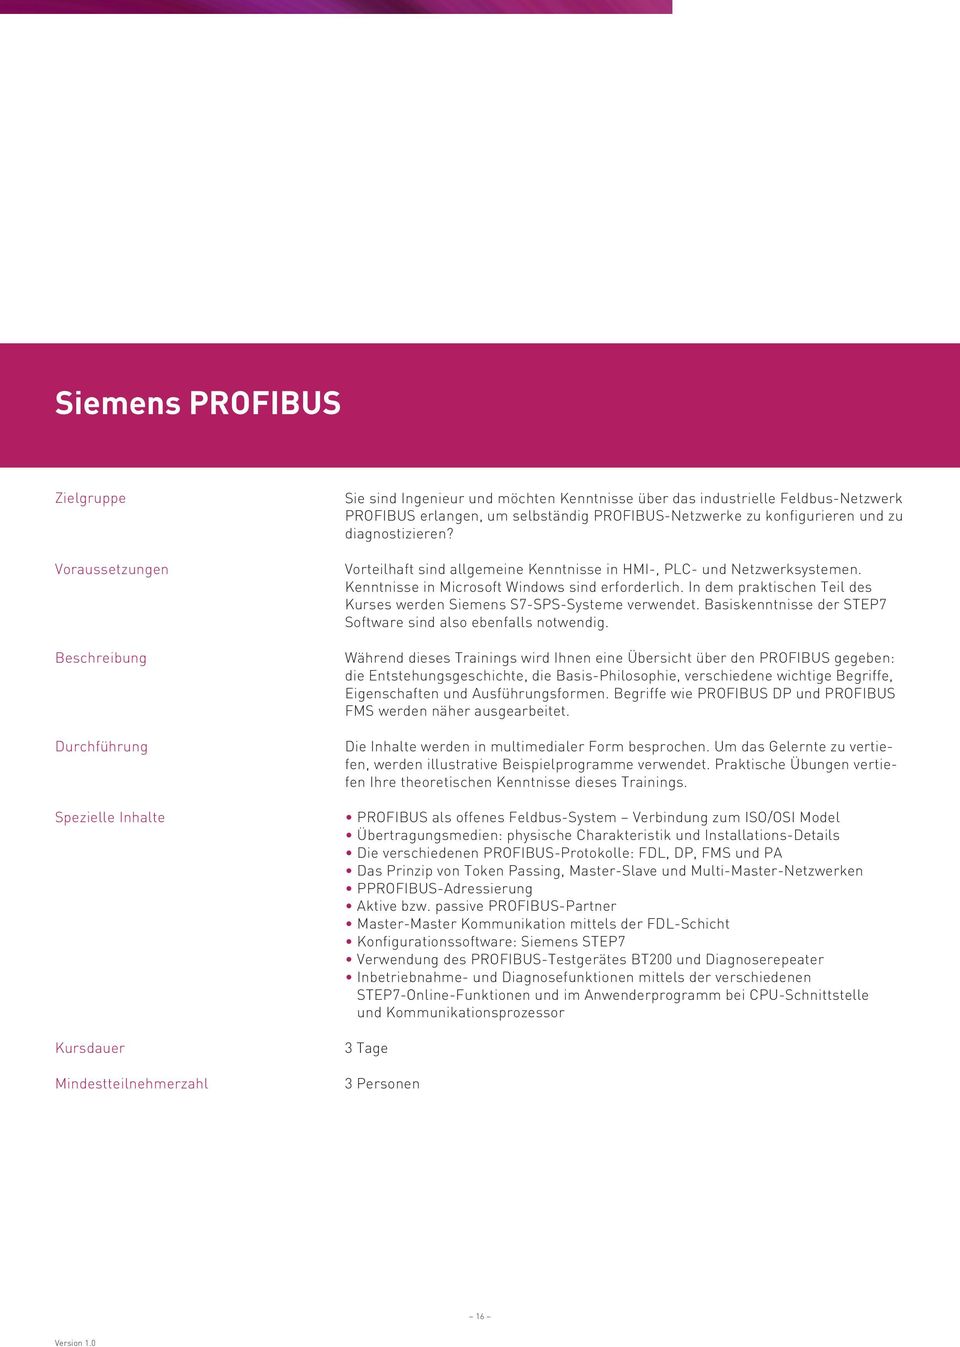 In dem praktischen Teil des Kurses werden Siemens S7-SPS-Systeme verwendet. Basiskenntnisse der STEP7 Software sind also ebenfalls notwendig.